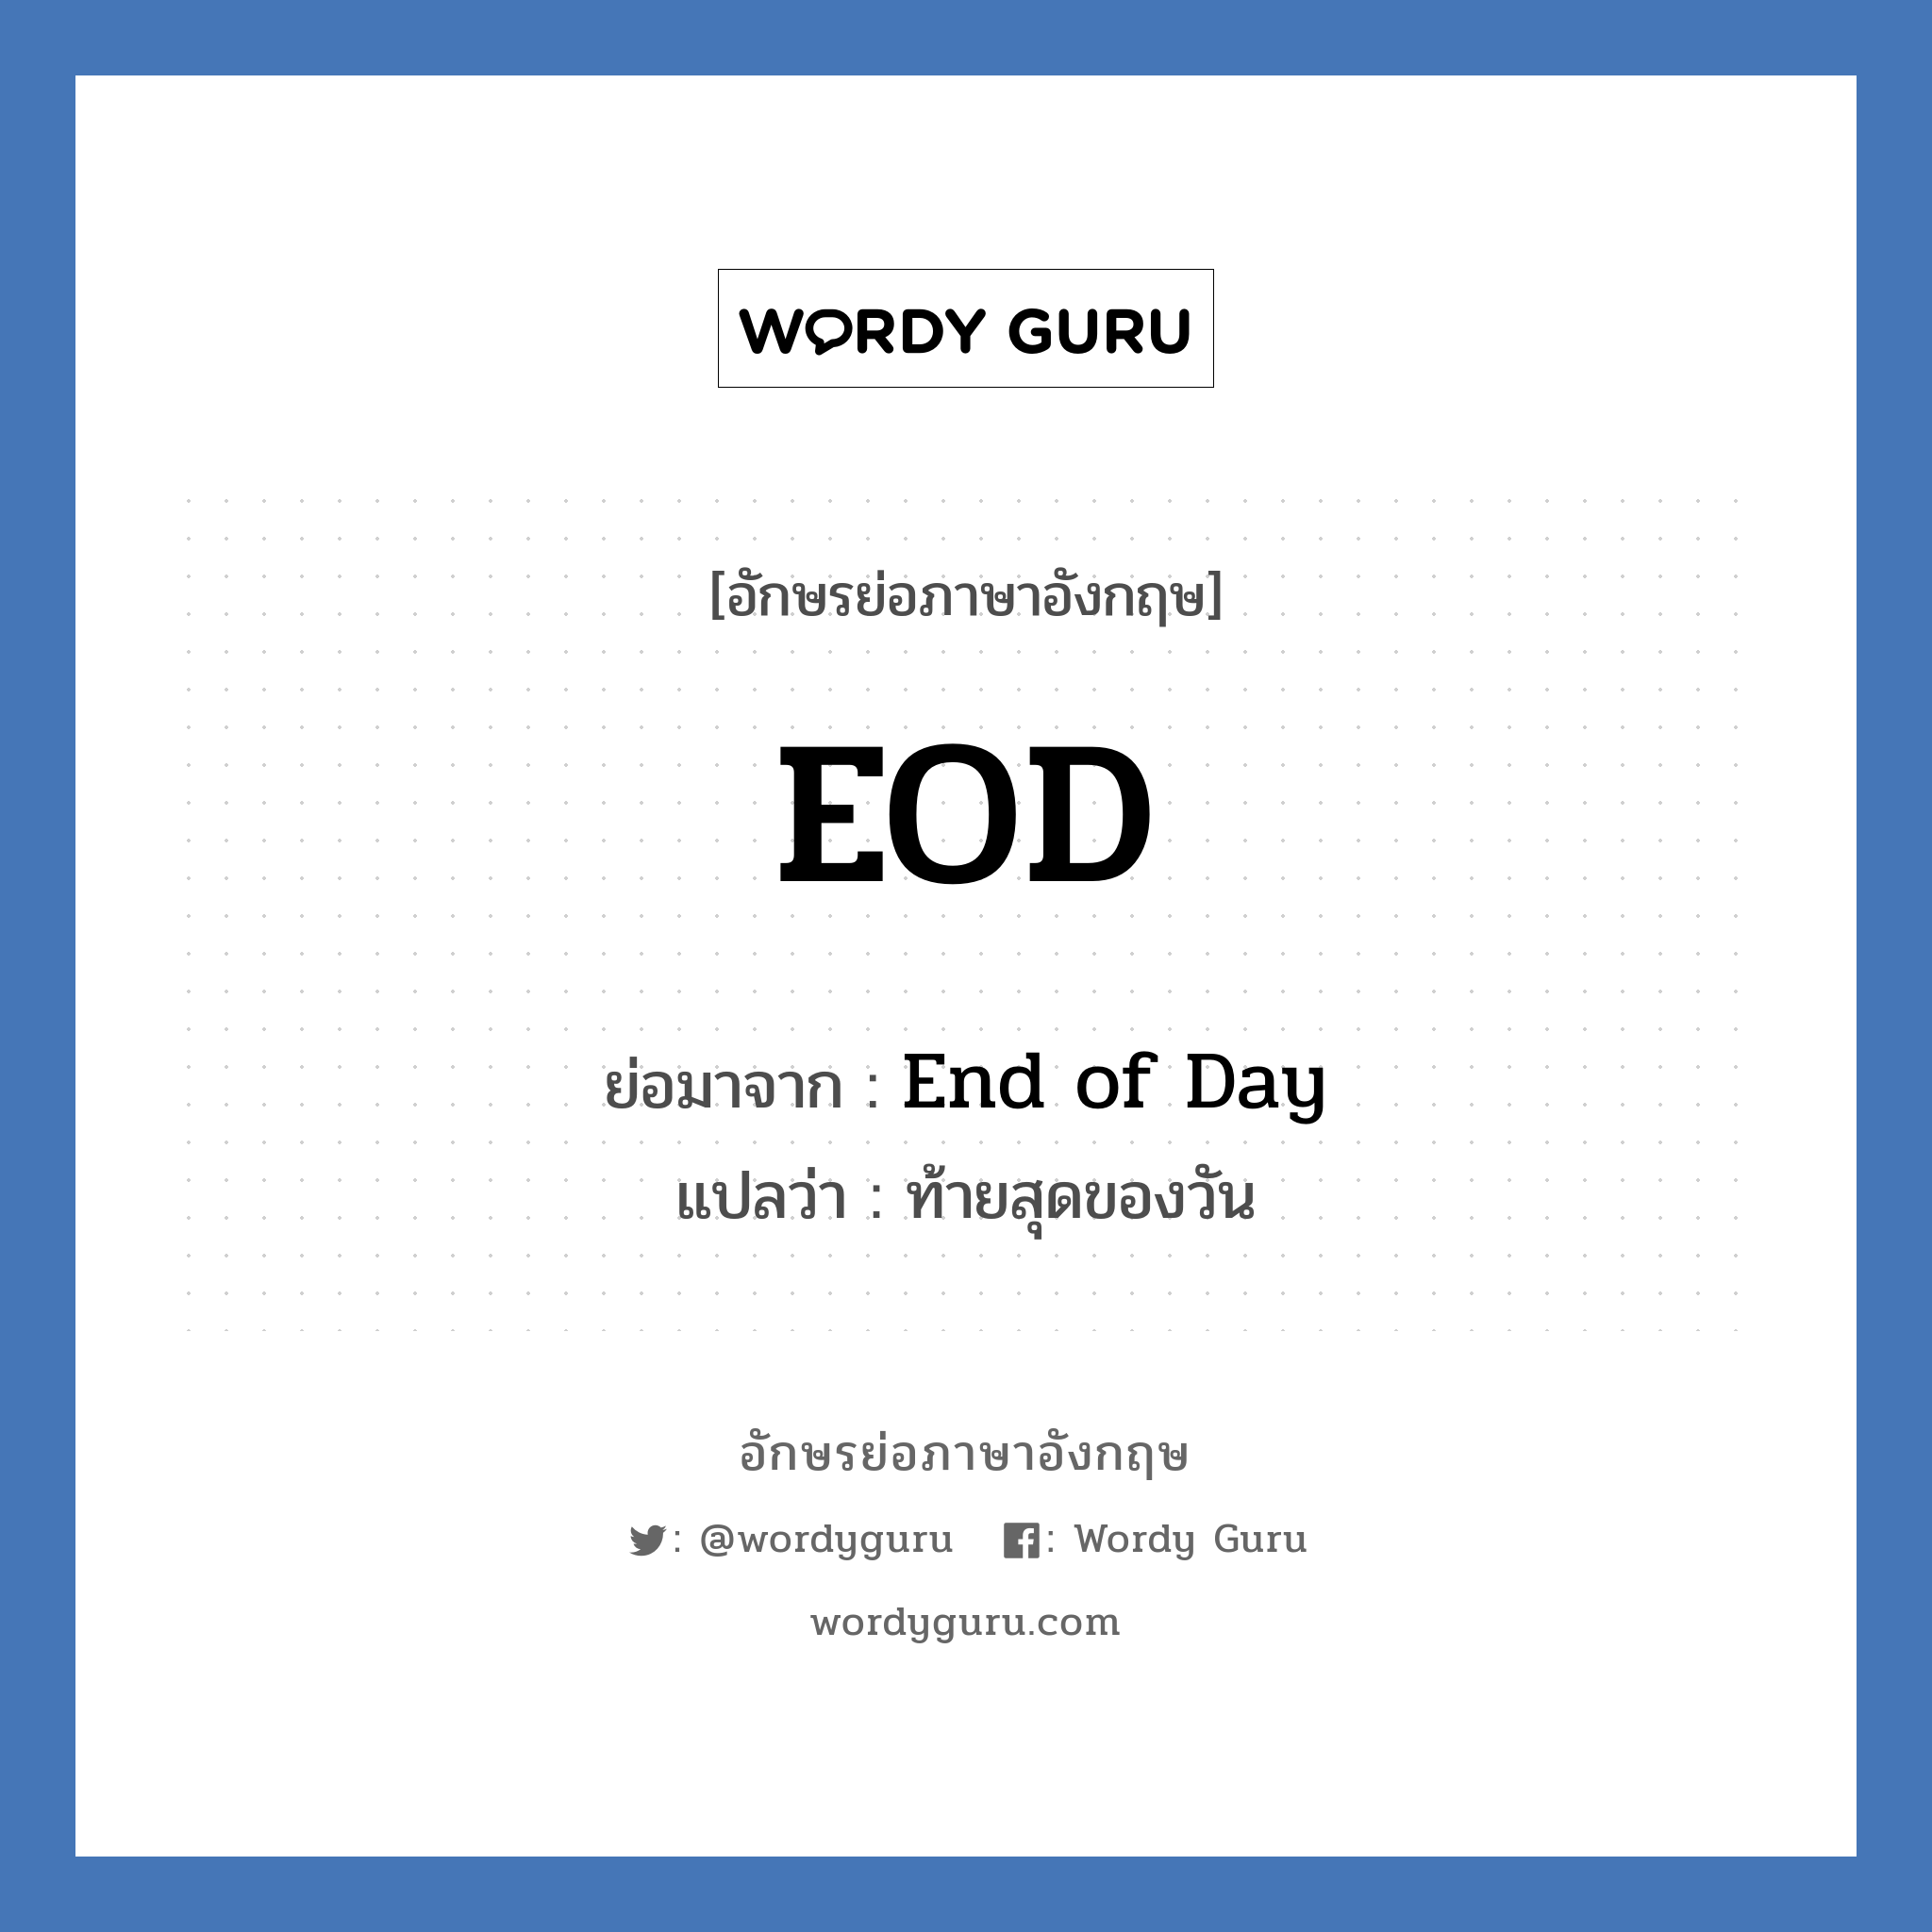 End of Day คำย่อคือ? แปลว่า?, อักษรย่อภาษาอังกฤษ End of Day ย่อมาจาก EOD แปลว่า ท้ายสุดของวัน